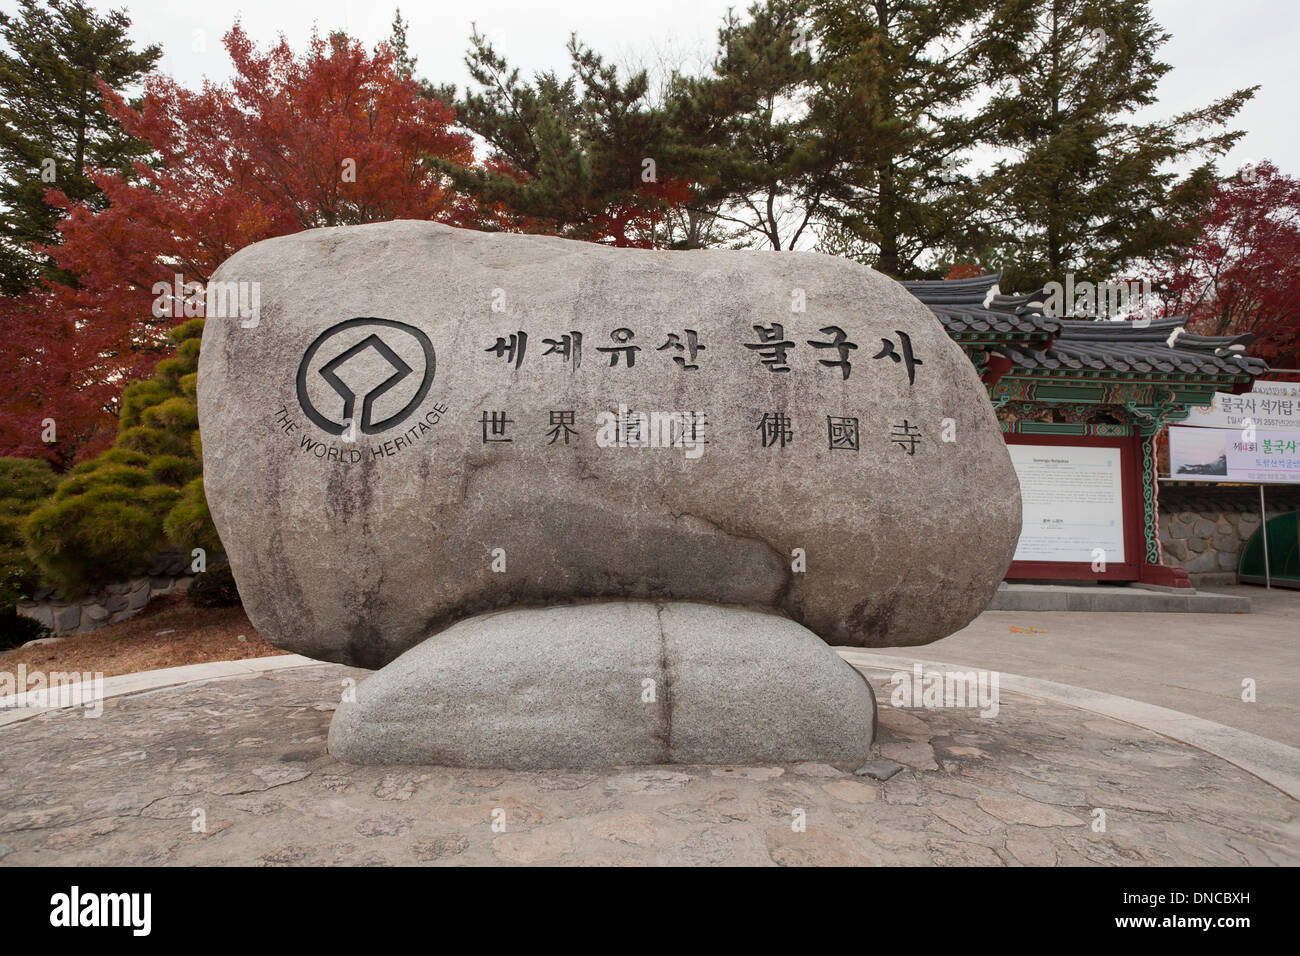 Bulguksa temple bouddhiste site du patrimoine mondial de l'stone marker - Gyeongju, Corée du Sud Banque D'Images